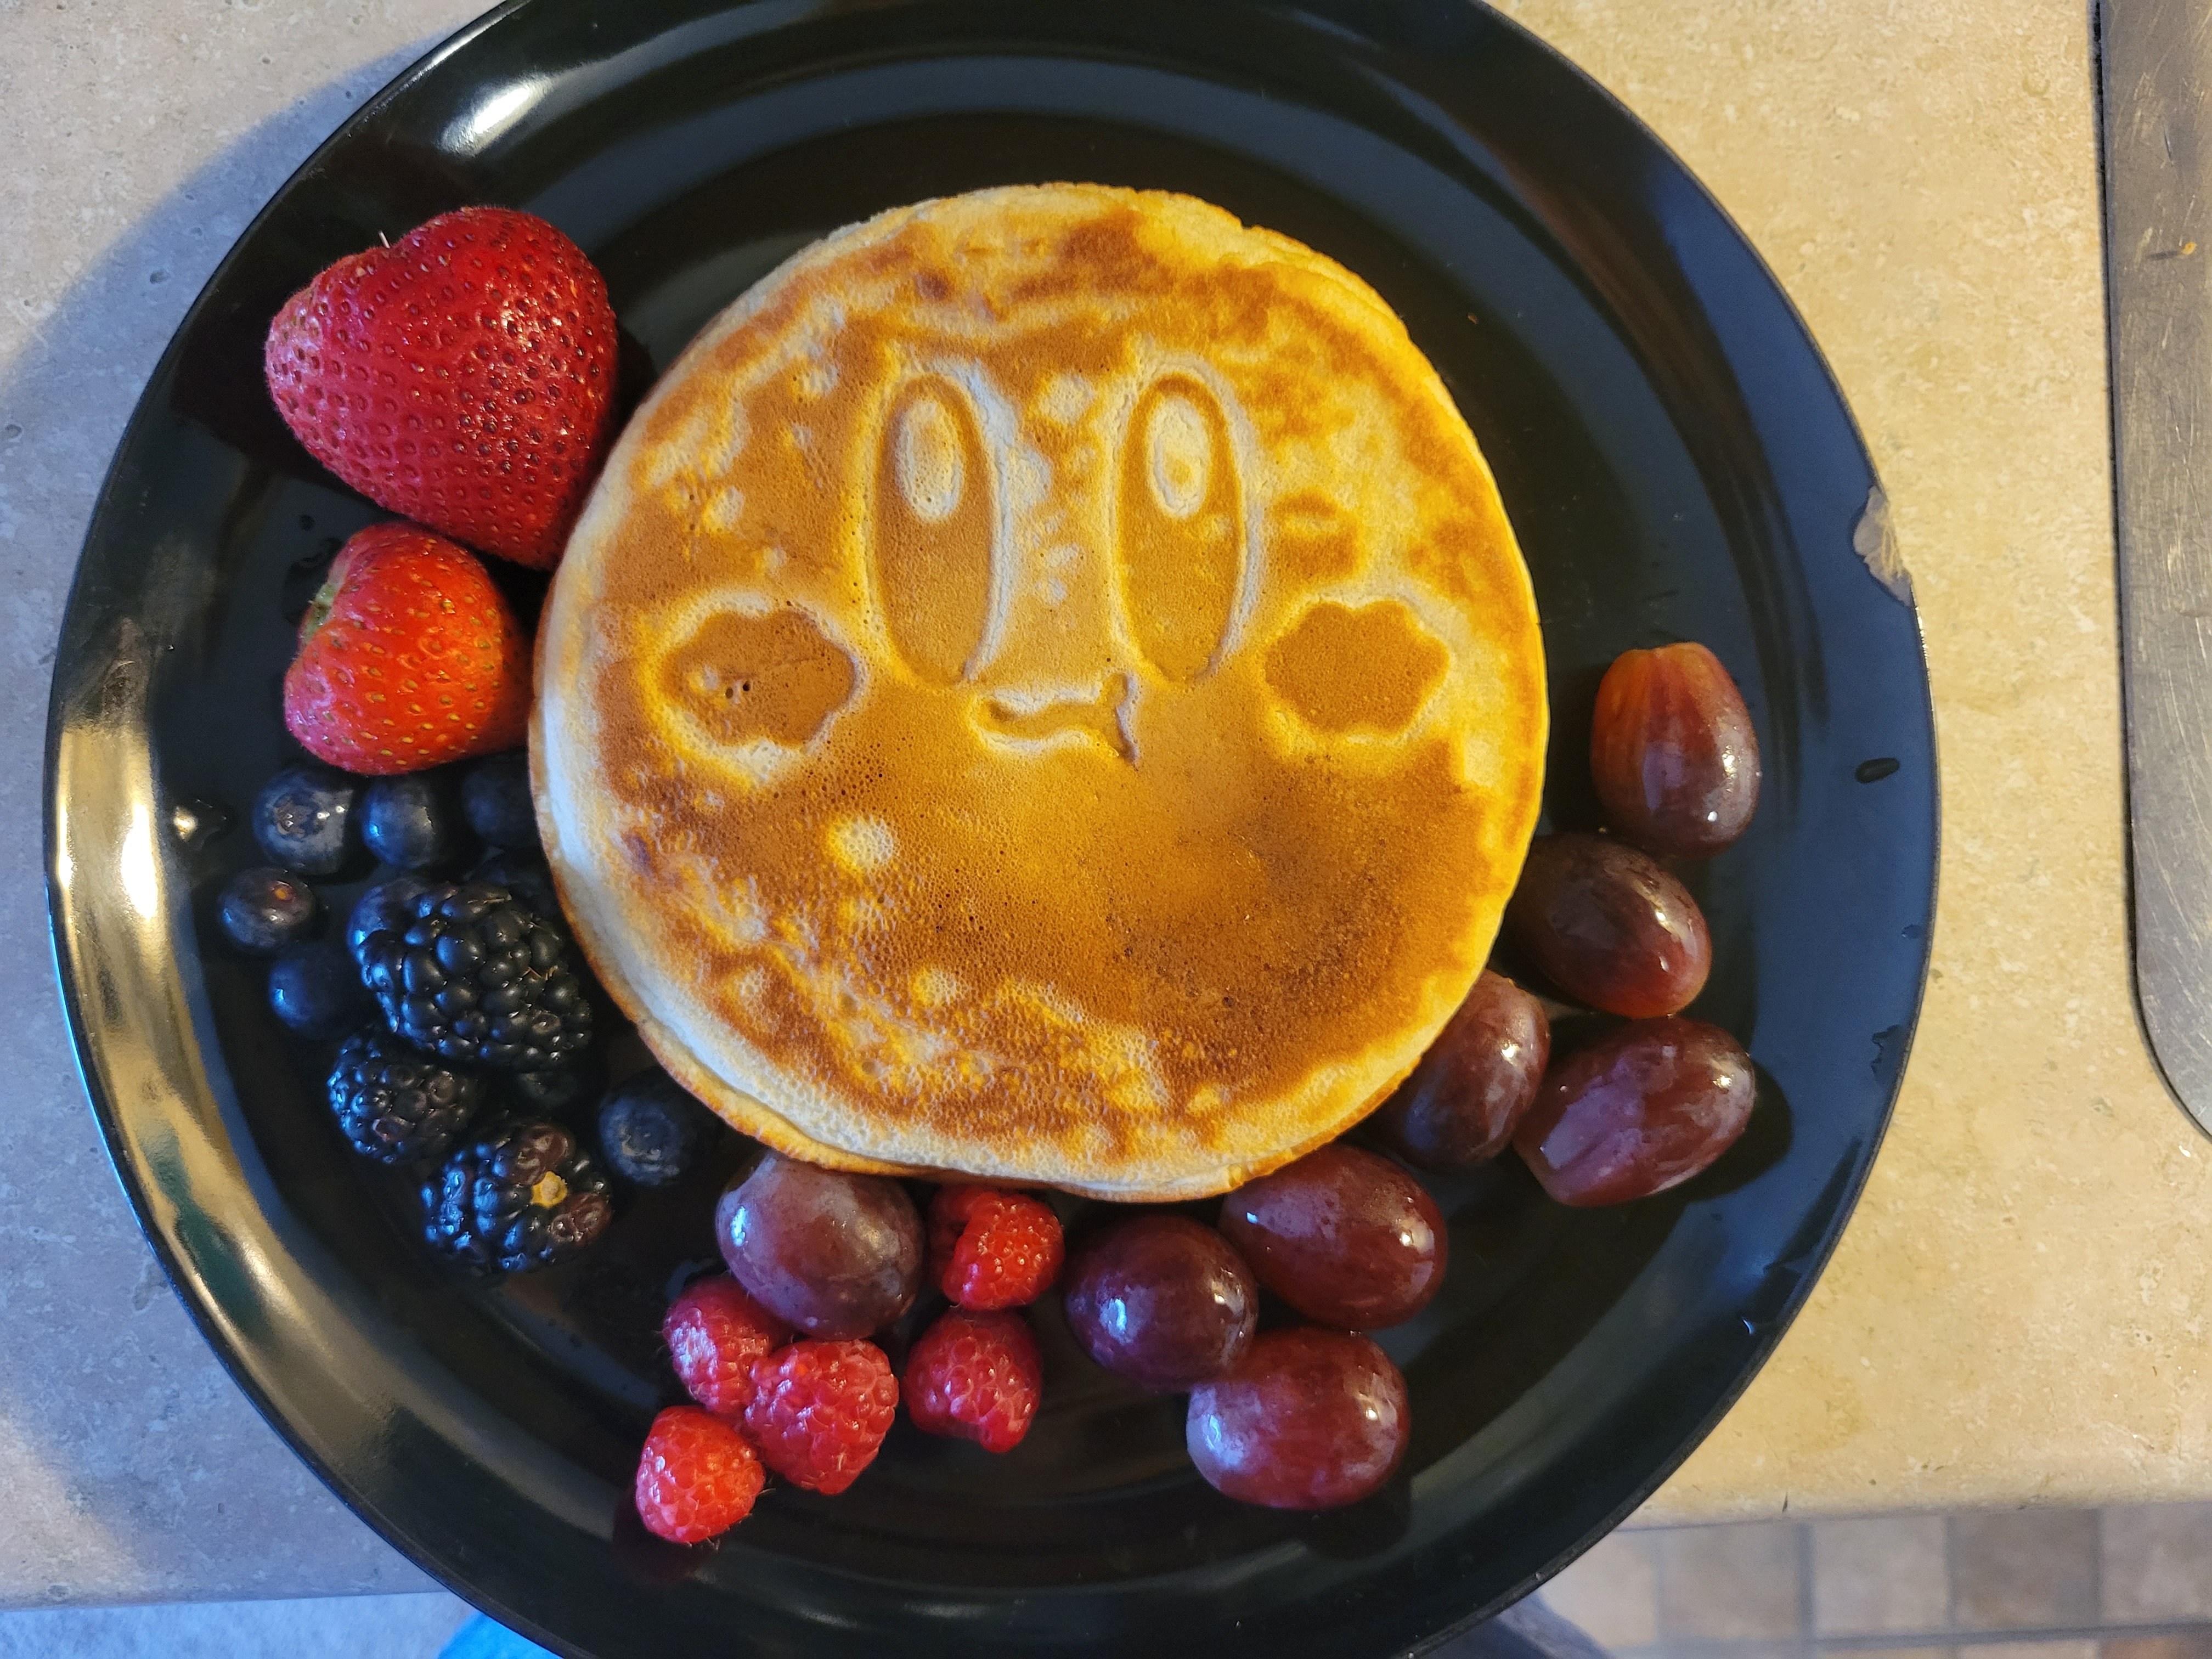 ichi ୨୧ on Twitter  Pancake maker, Kirby, Ichi